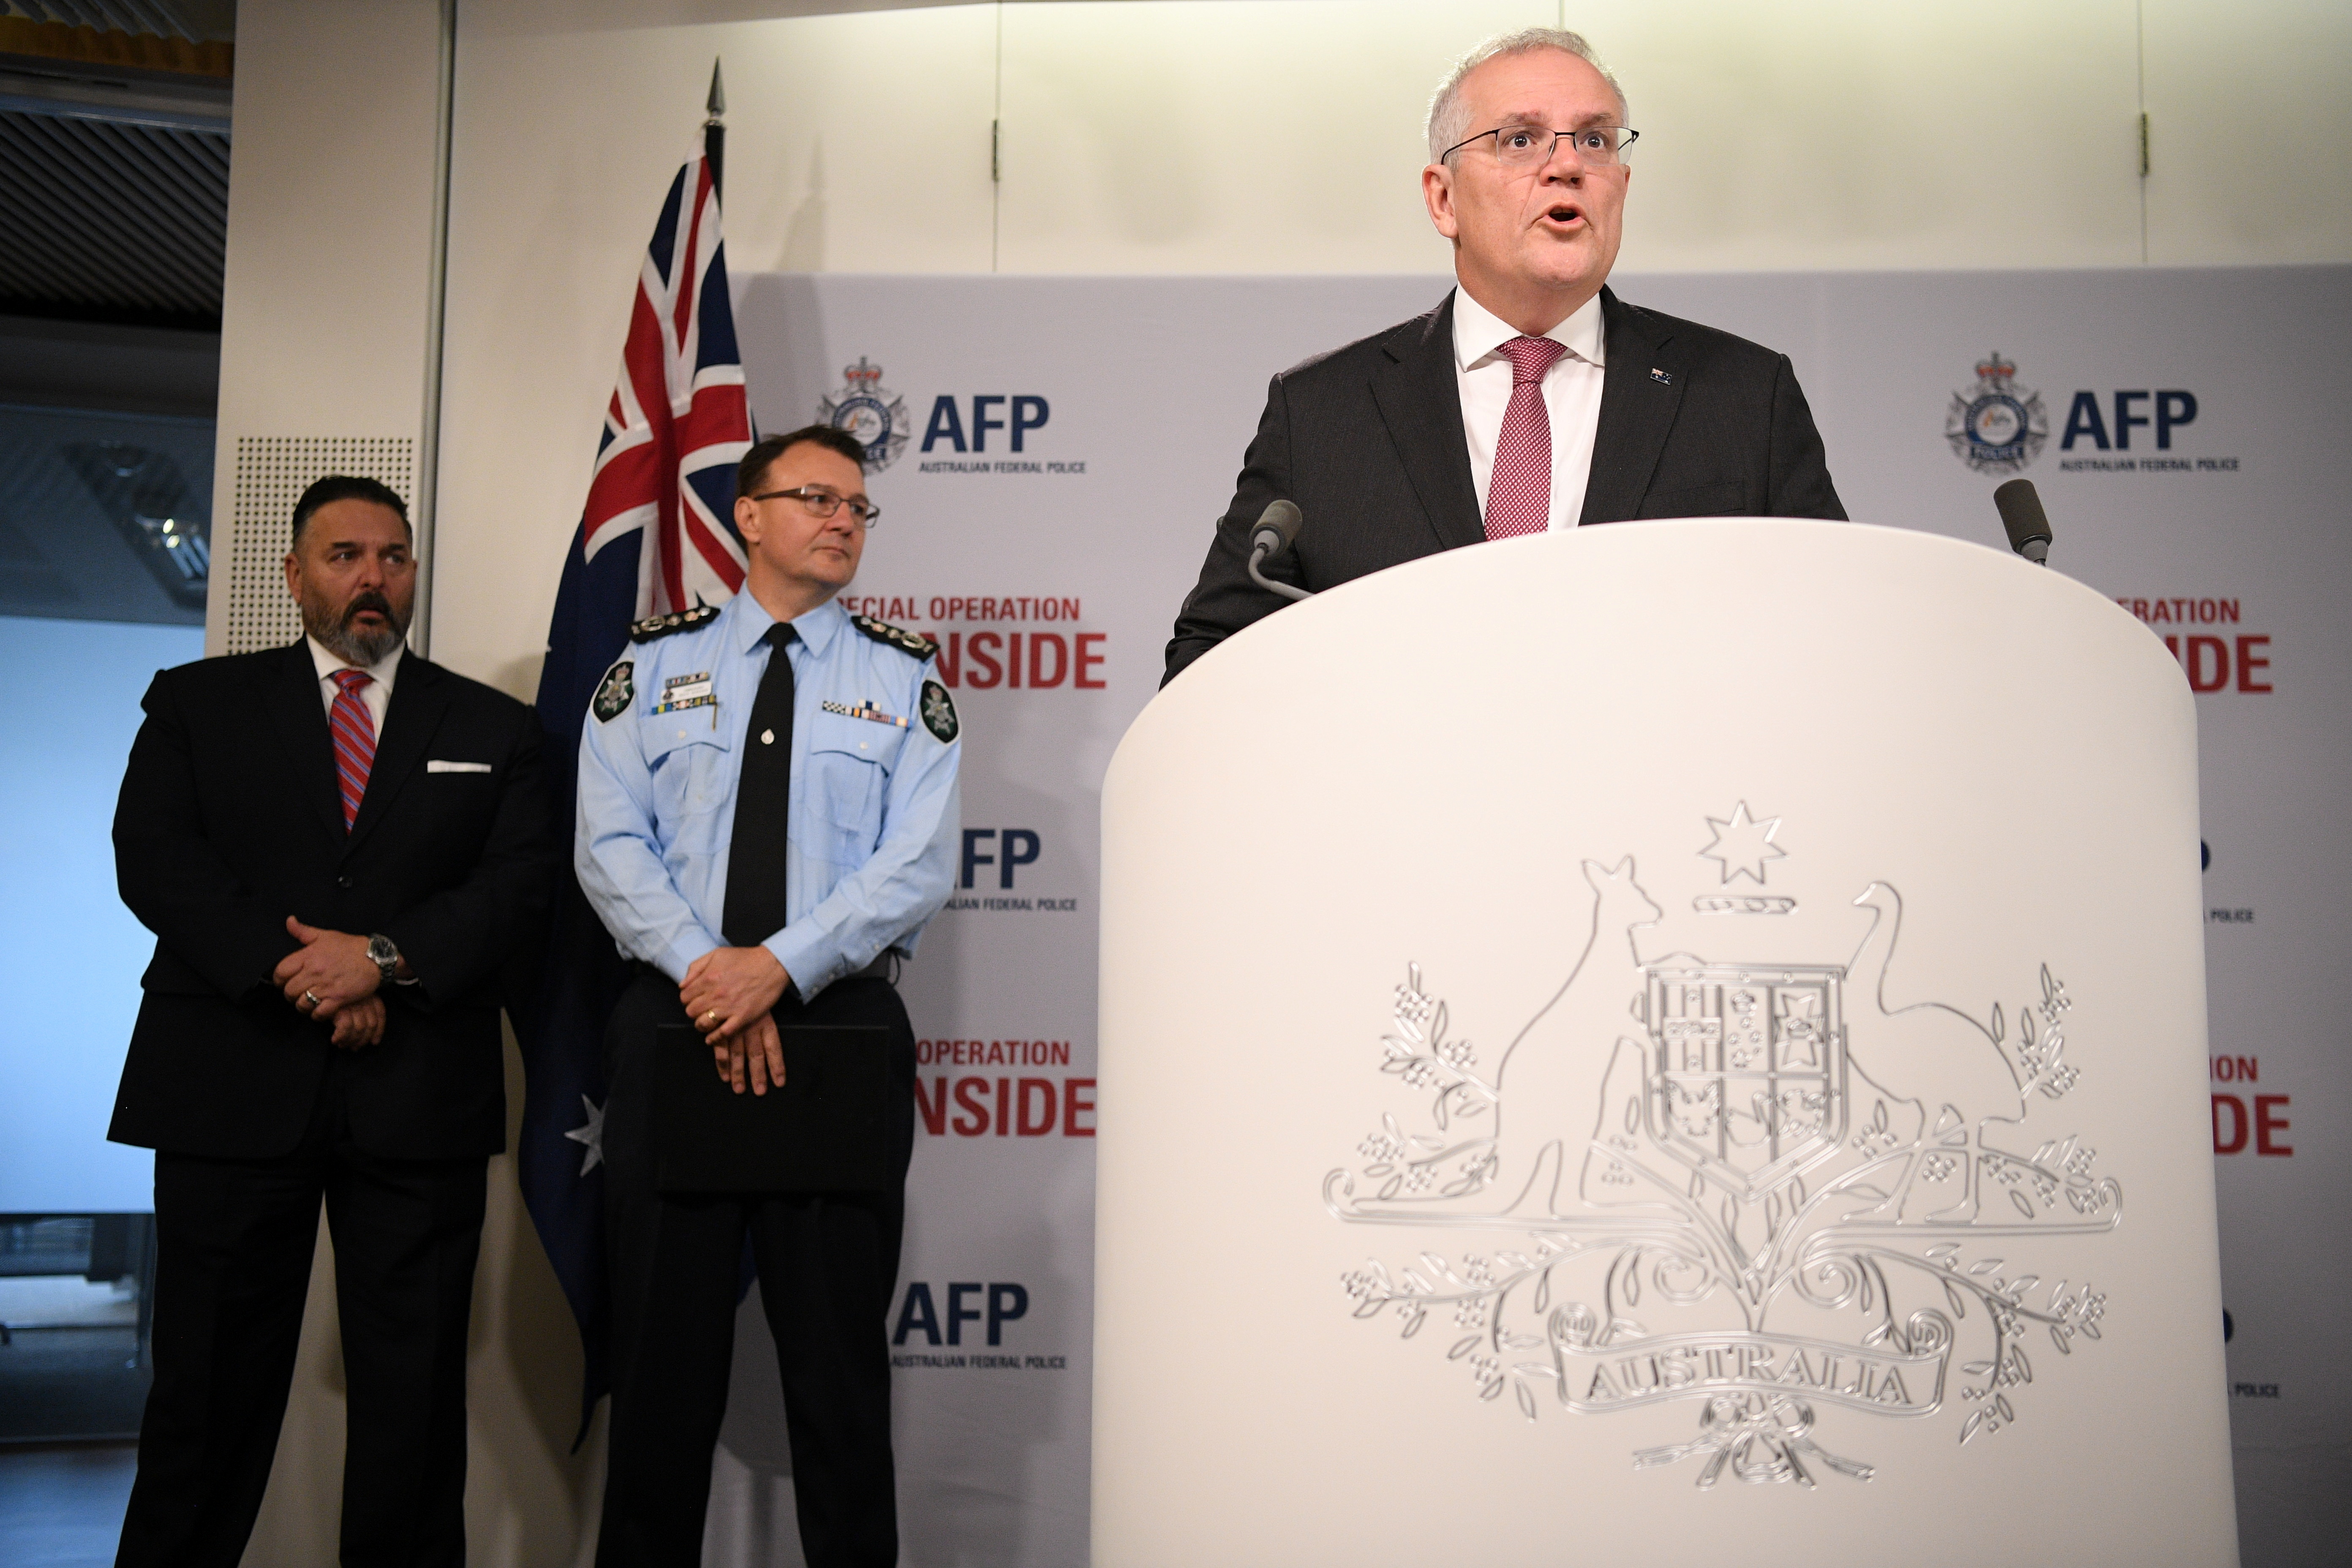 Australian Prime Minister Scott Morrison speaks about Operation Ironside in Sydney